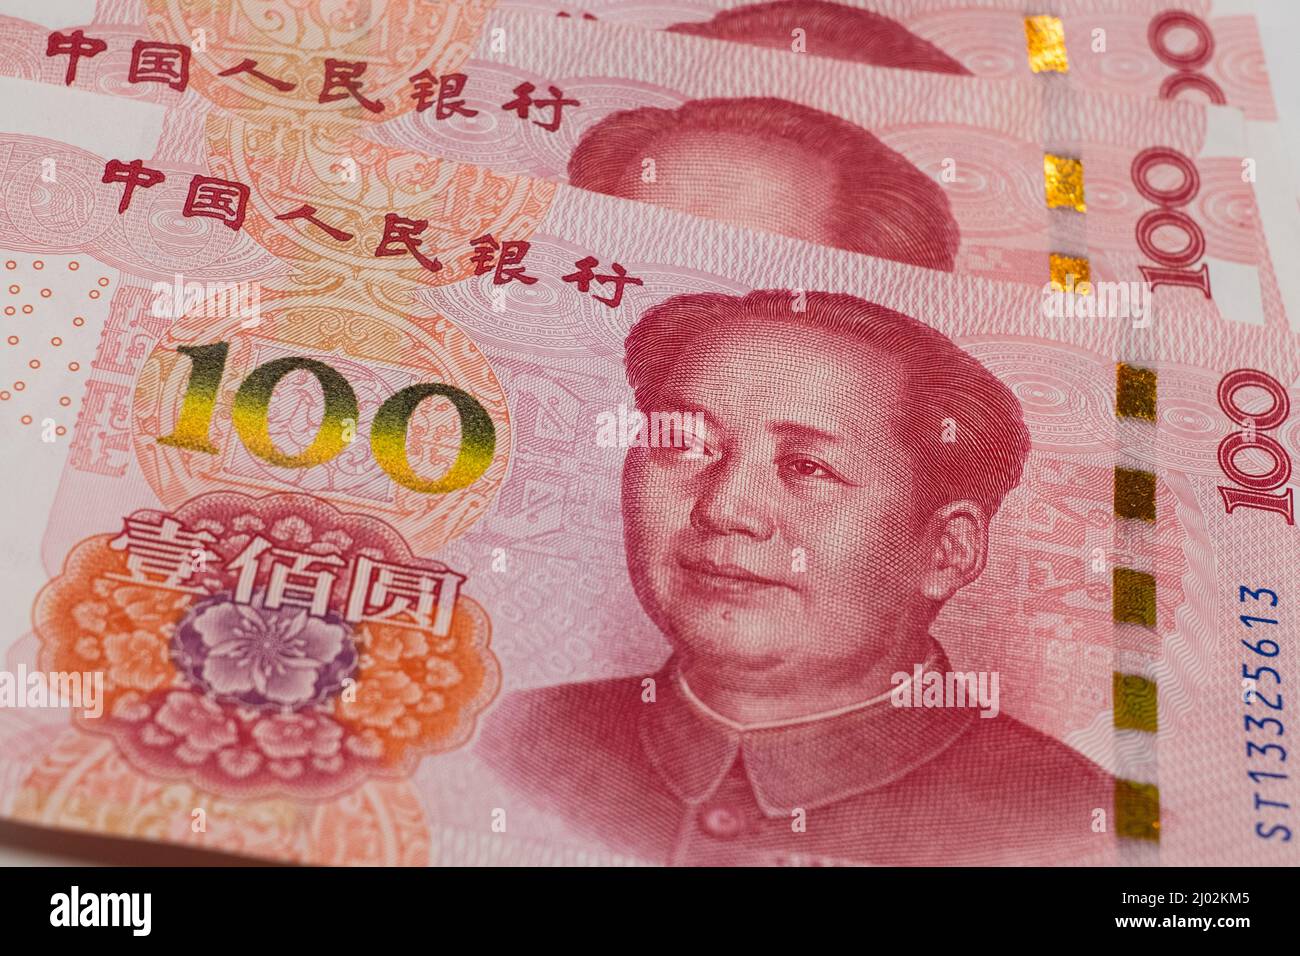 Chinesische Yuan-Renminbi-Banknoten, Papiergeld, Bank of China Währung. Chinesisches Finanzsystem. Einkommens- und Zahlungskonzept Stockfoto